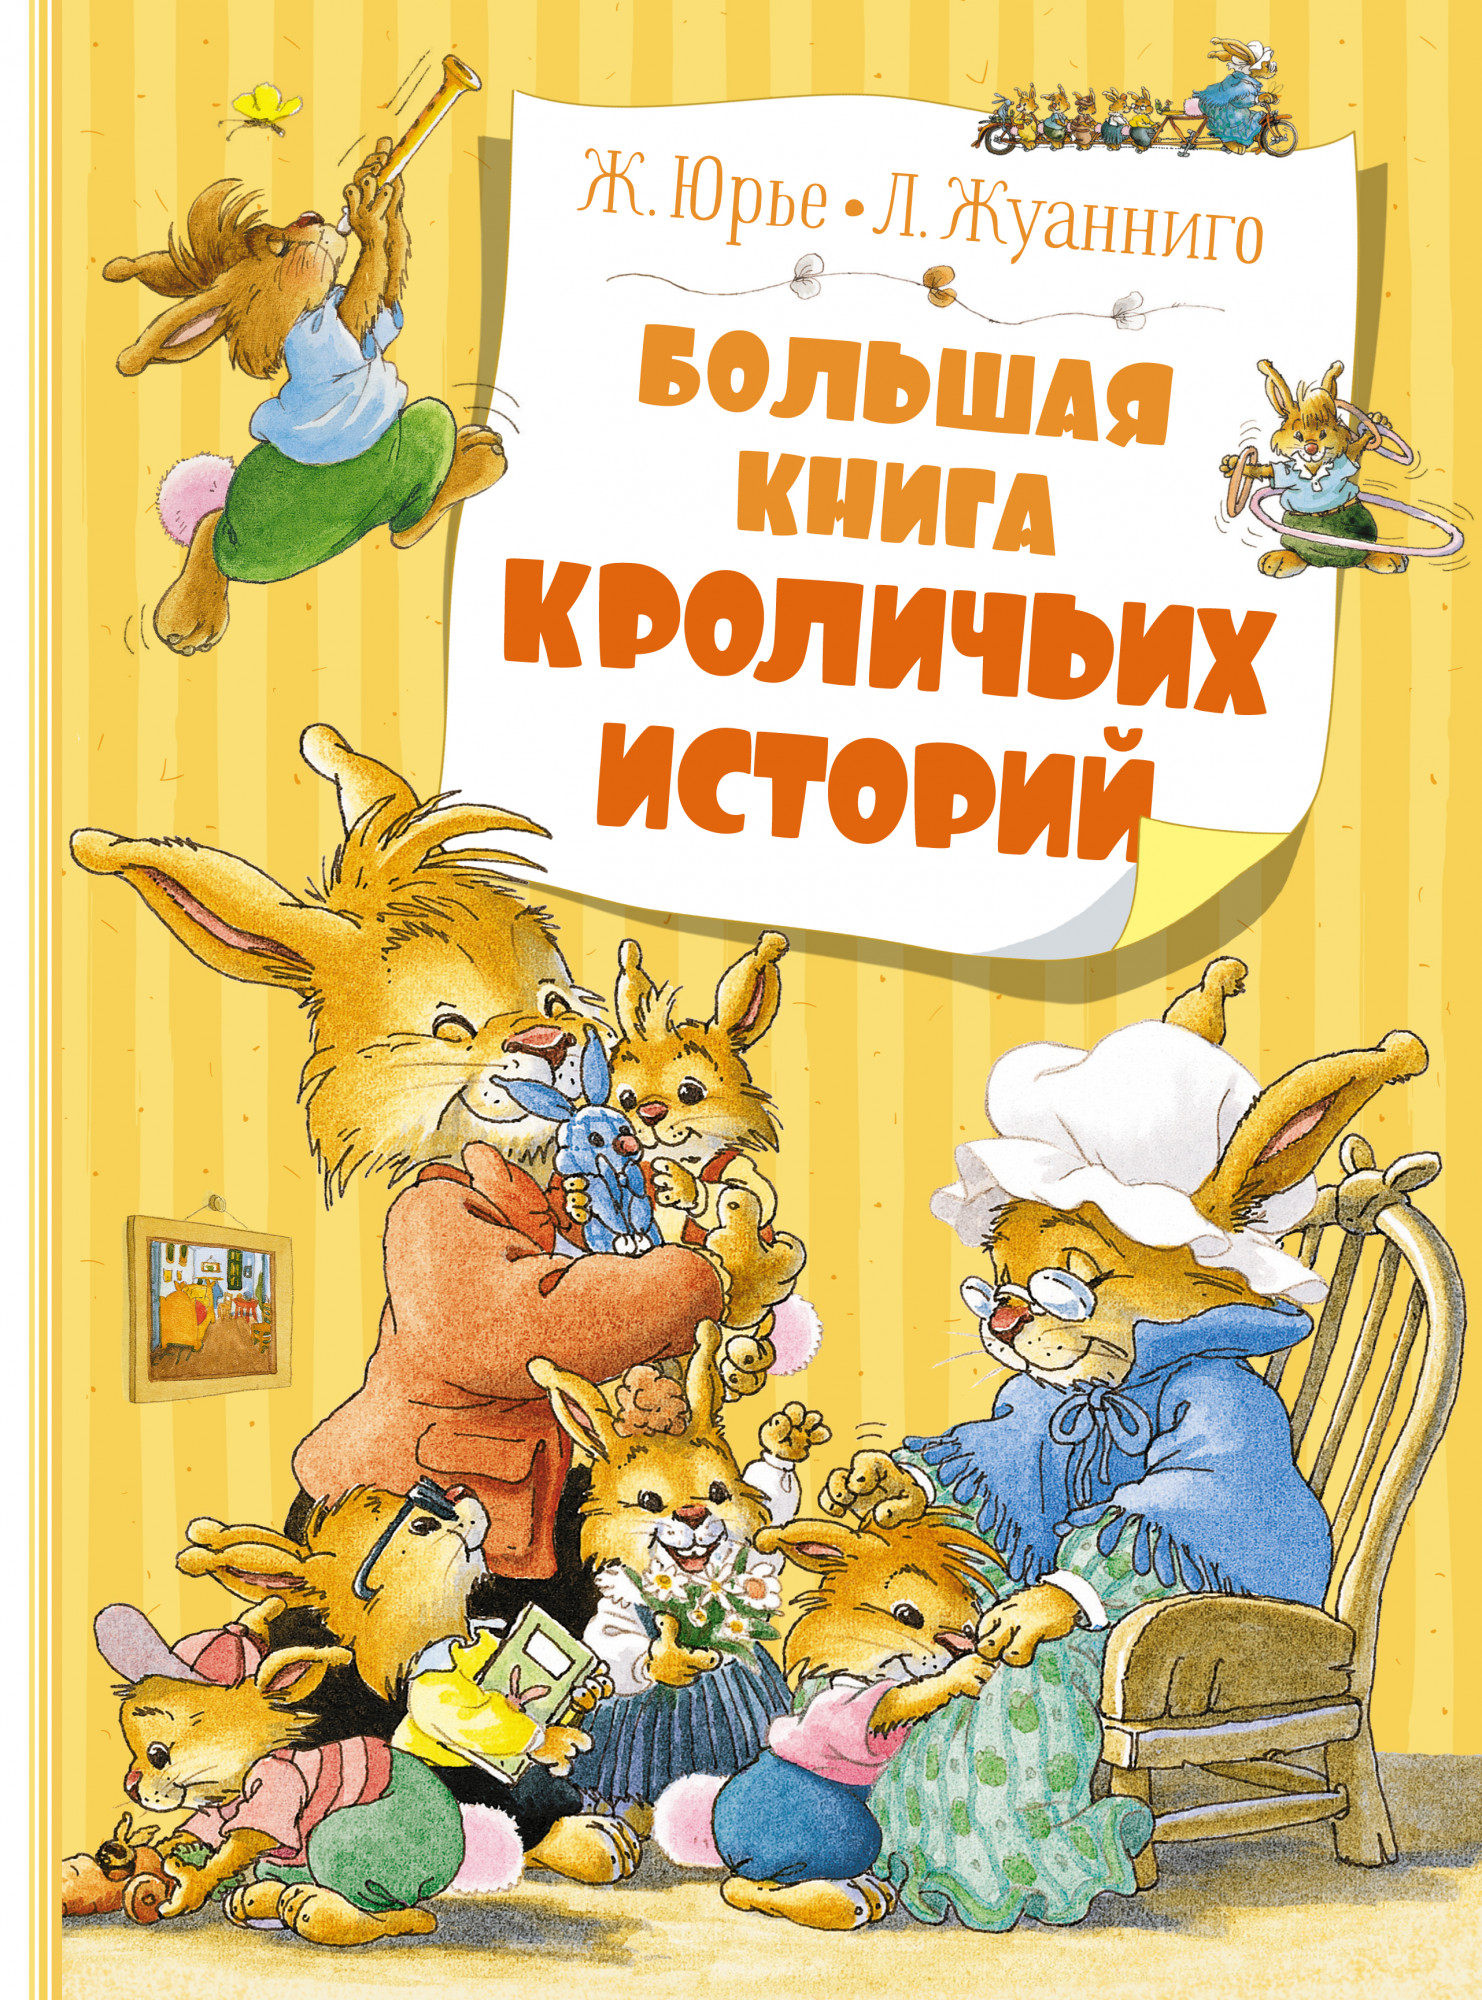 Юрье Женевьева Большая книга кроличьих историй (новое оформление) большая книга сказок новое оформление родари дж